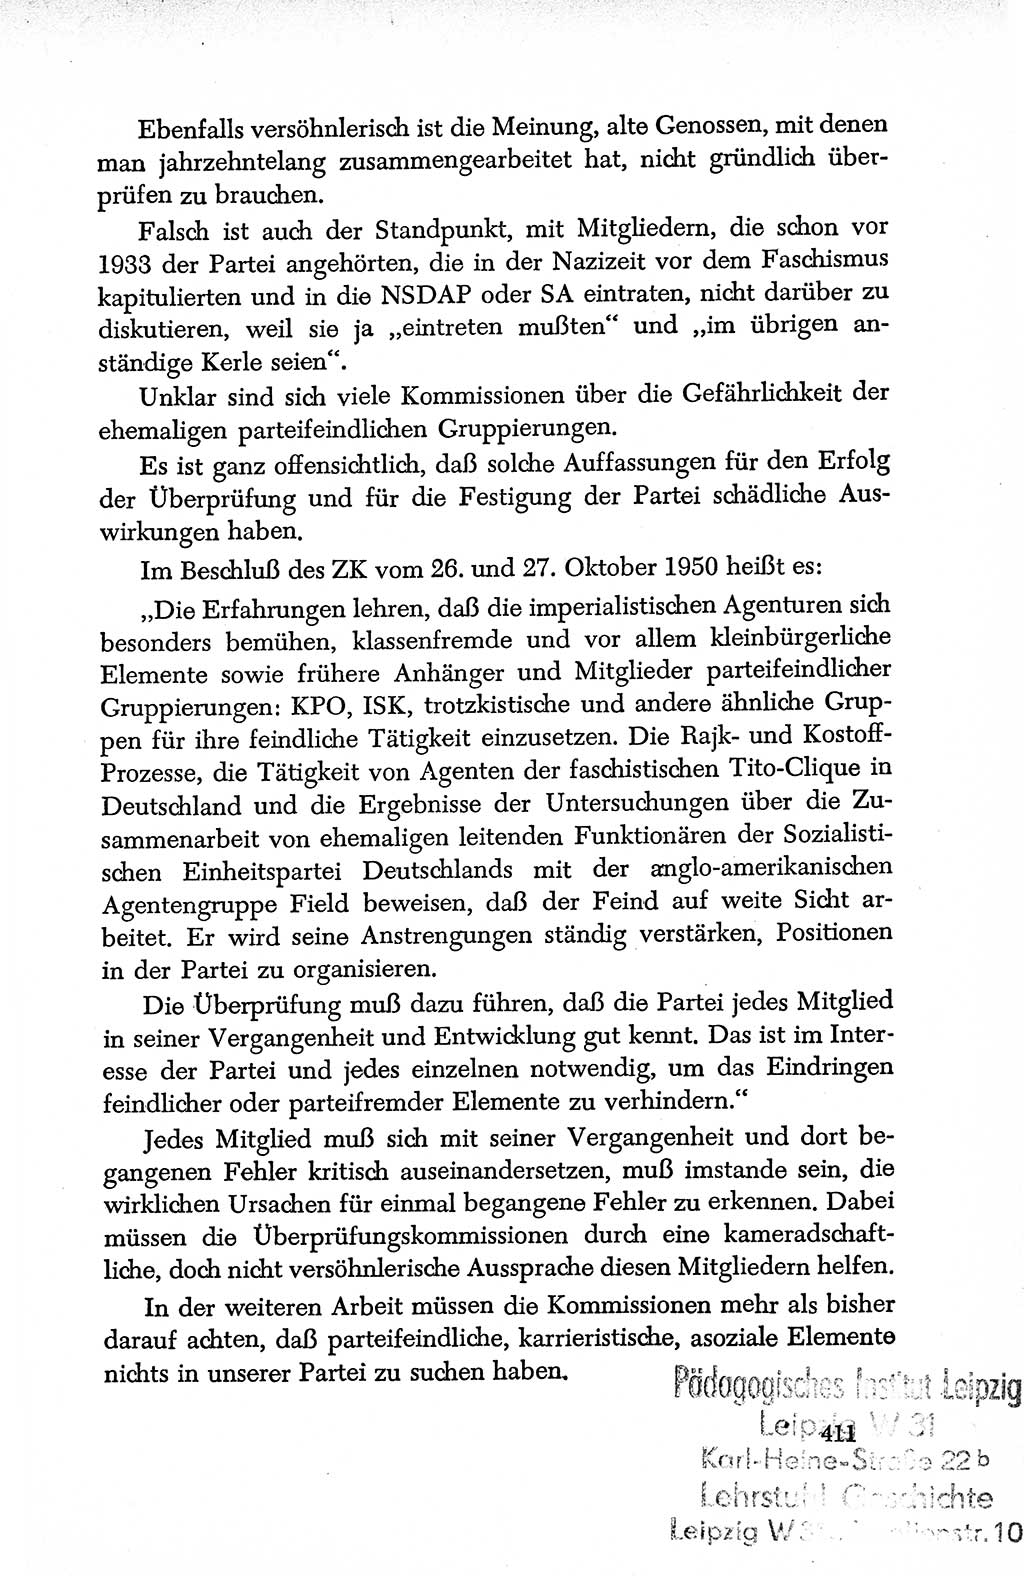 Dokumente der Sozialistischen Einheitspartei Deutschlands (SED) [Deutsche Demokratische Republik (DDR)] 1950-1952, Seite 411 (Dok. SED DDR 1950-1952, S. 411)